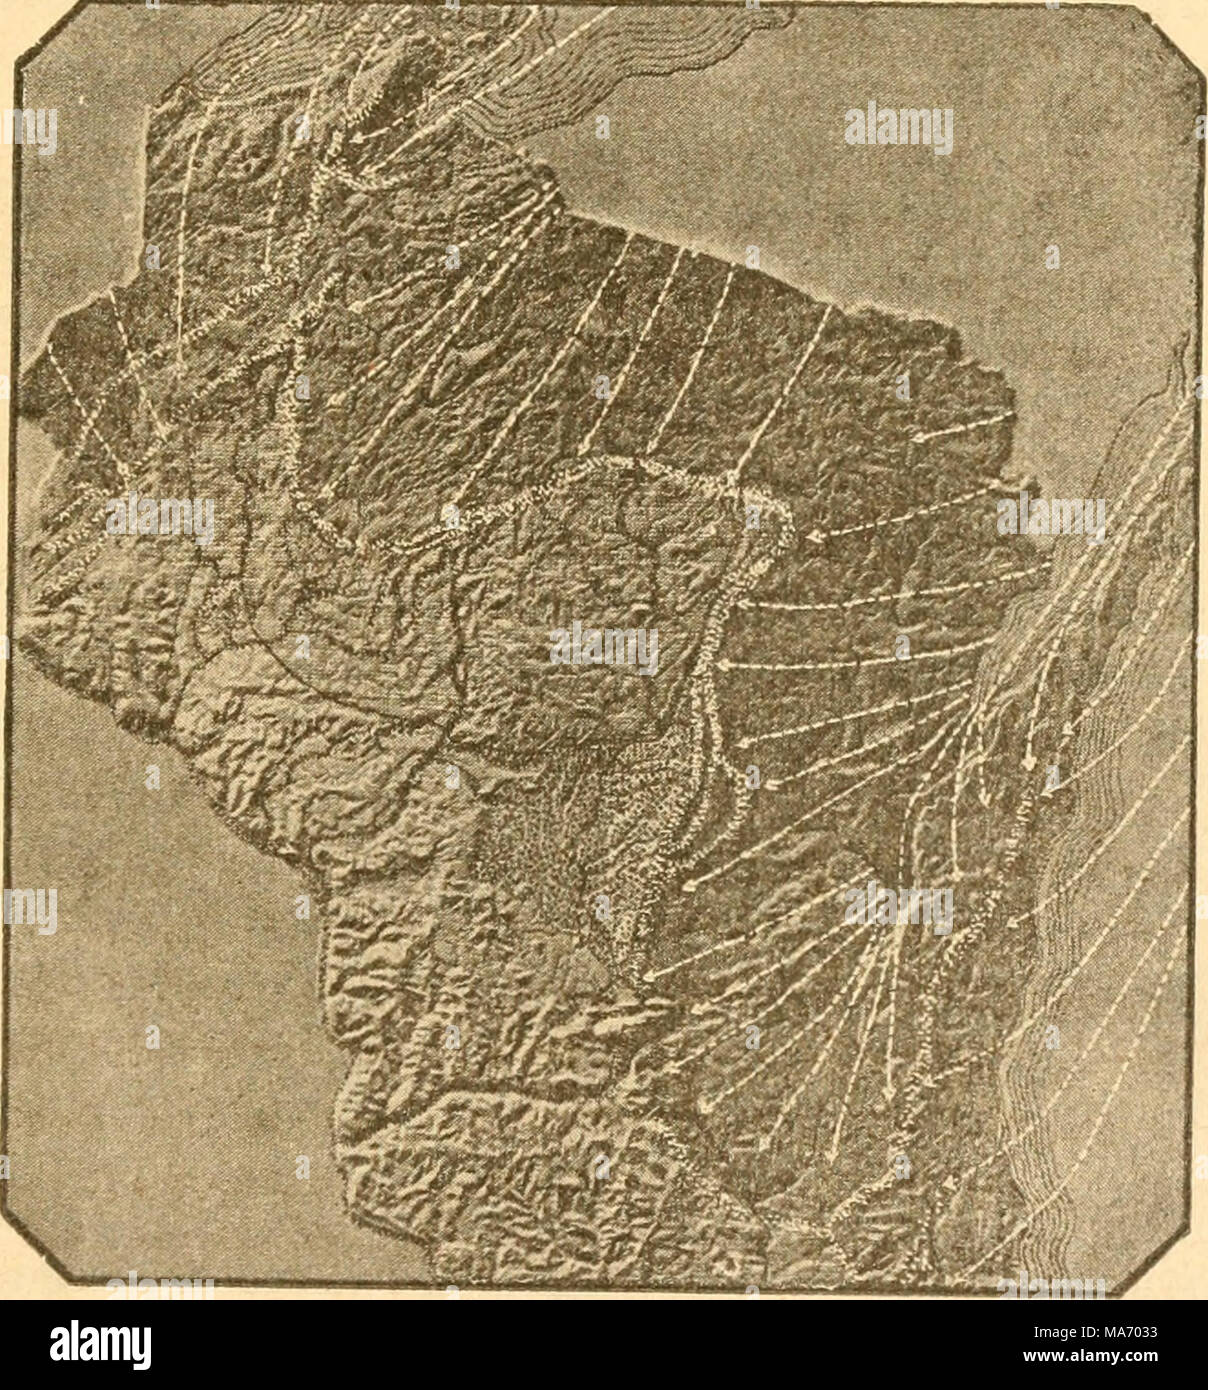 Lecciones elementales en la física de la agricultura . Fig. 38.  Foto-grabado de un mapa en relieve de Wisconsin, mostrando los glaciares y  no glaciares zonas del estado. muestra que, en